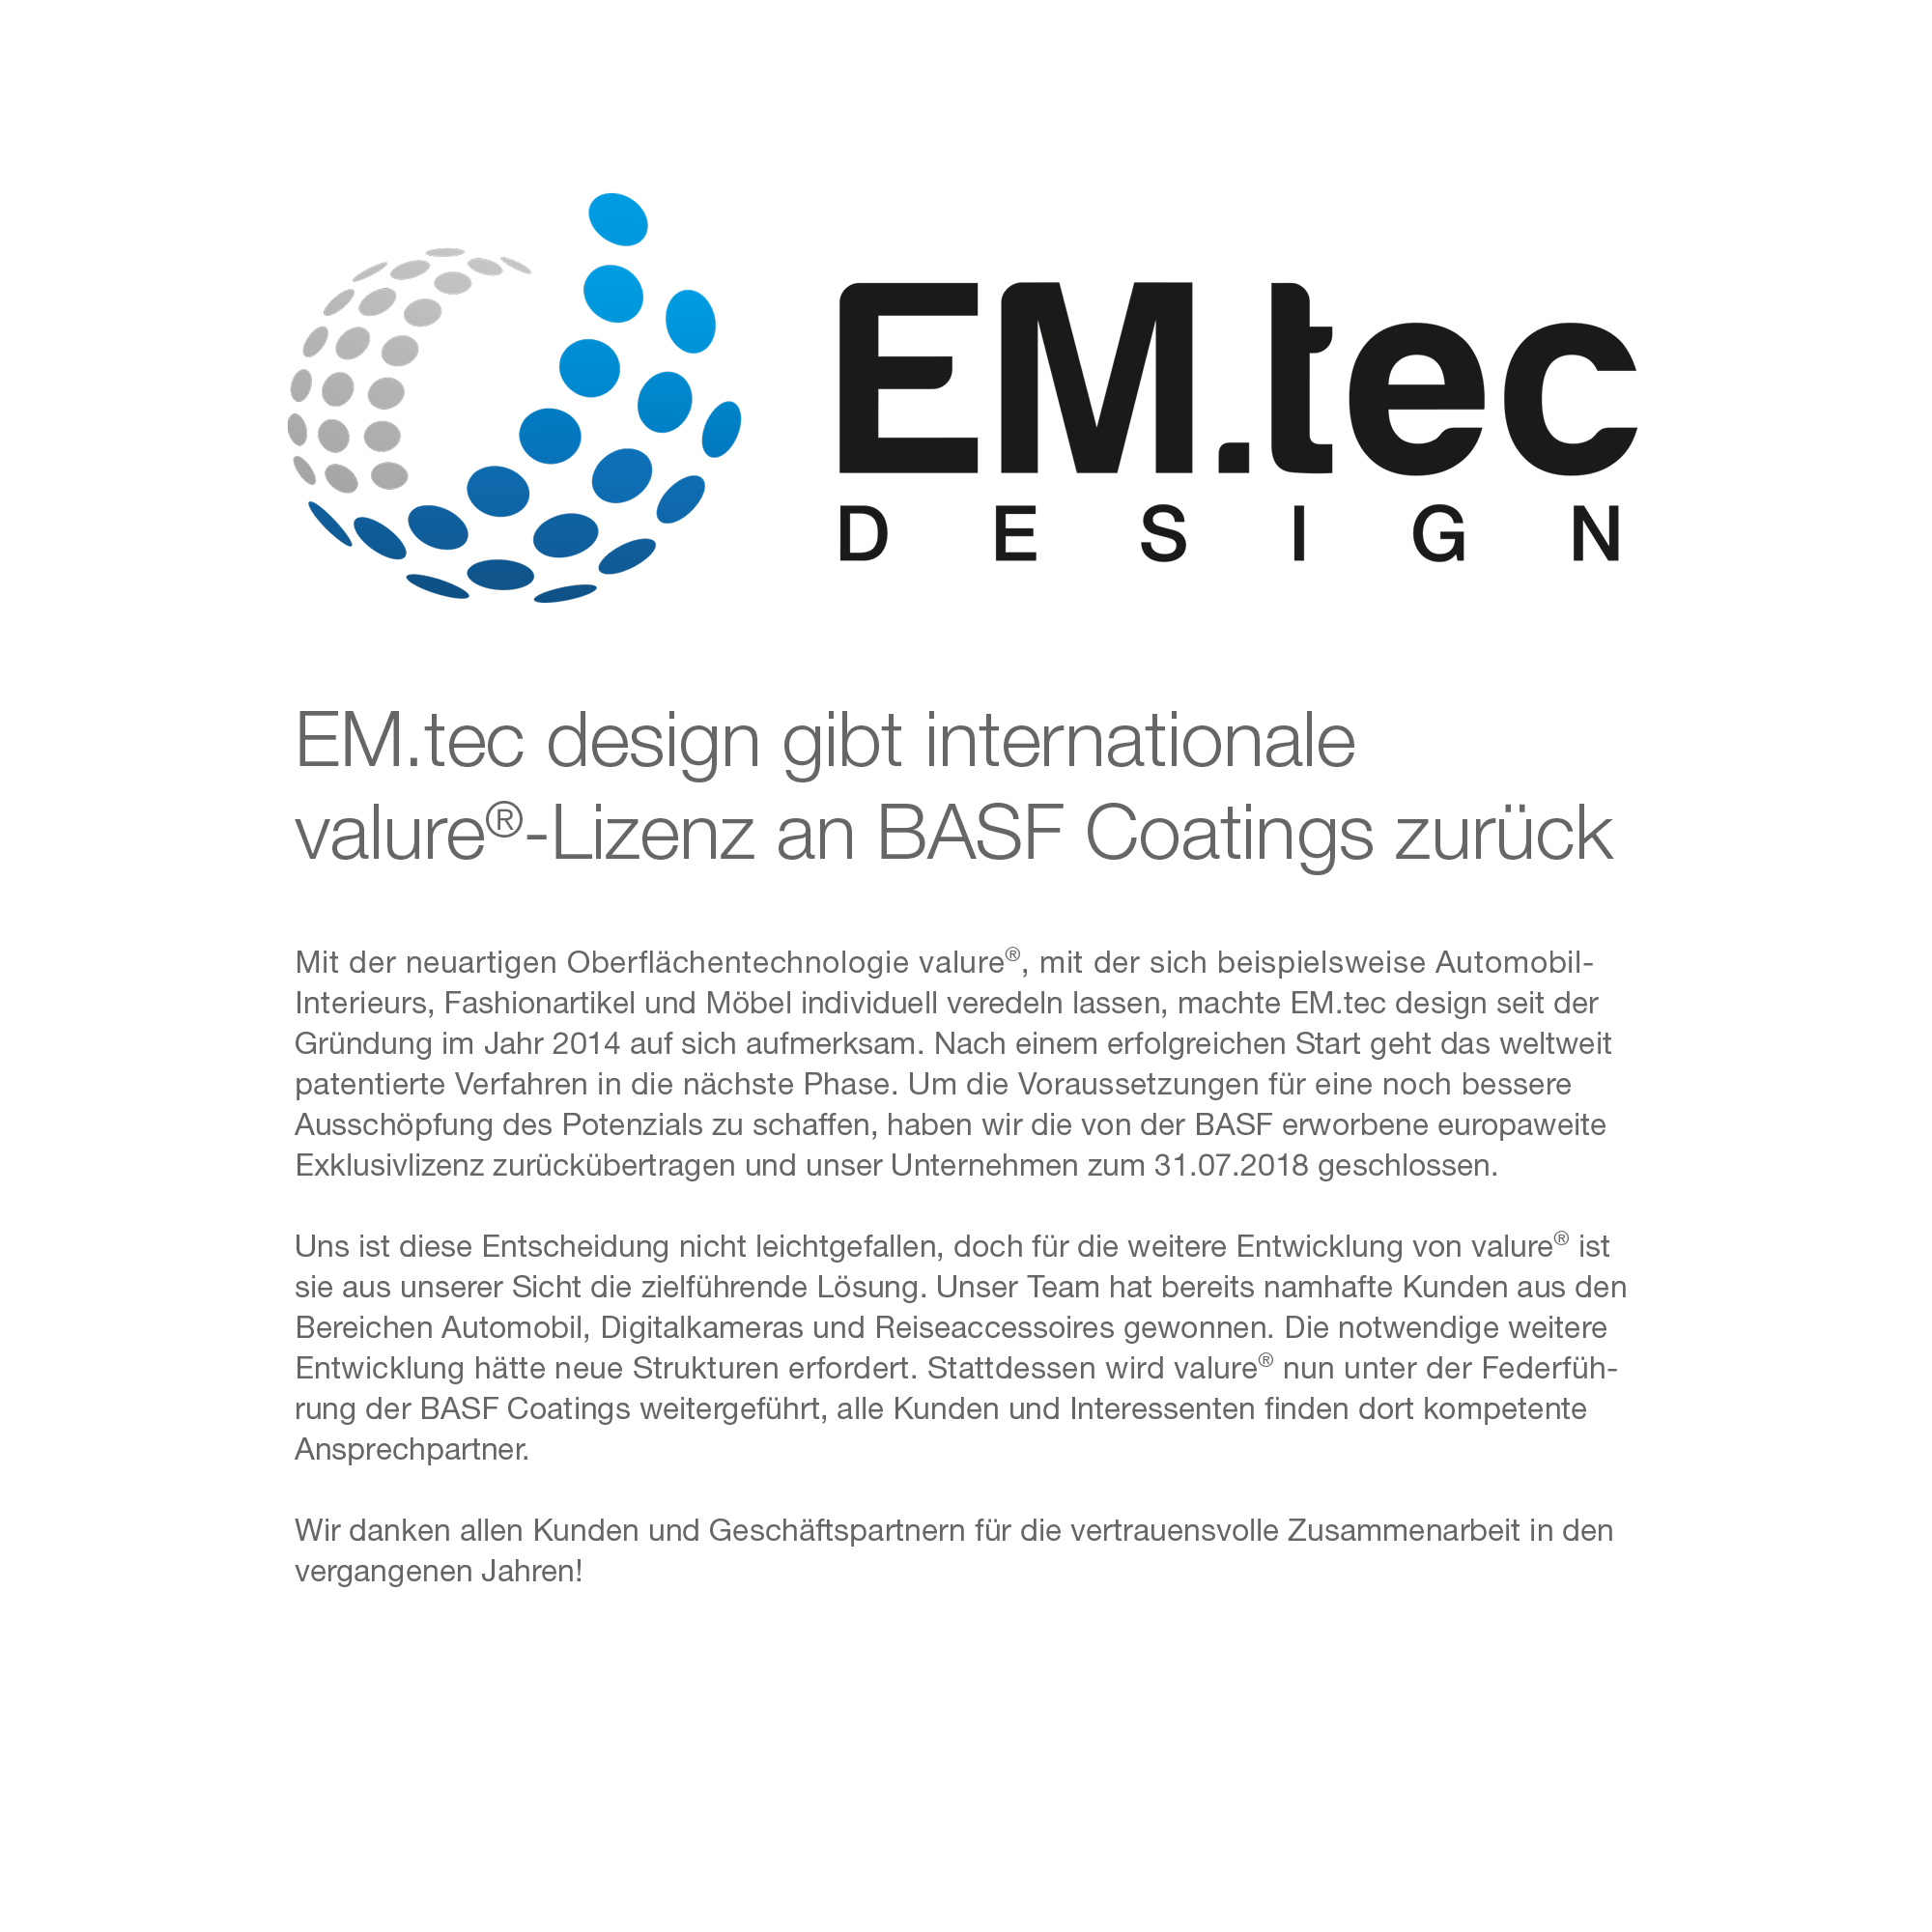 EM.tec design gibt internationale valure®-Lizenz an BASF Coatings zurück.